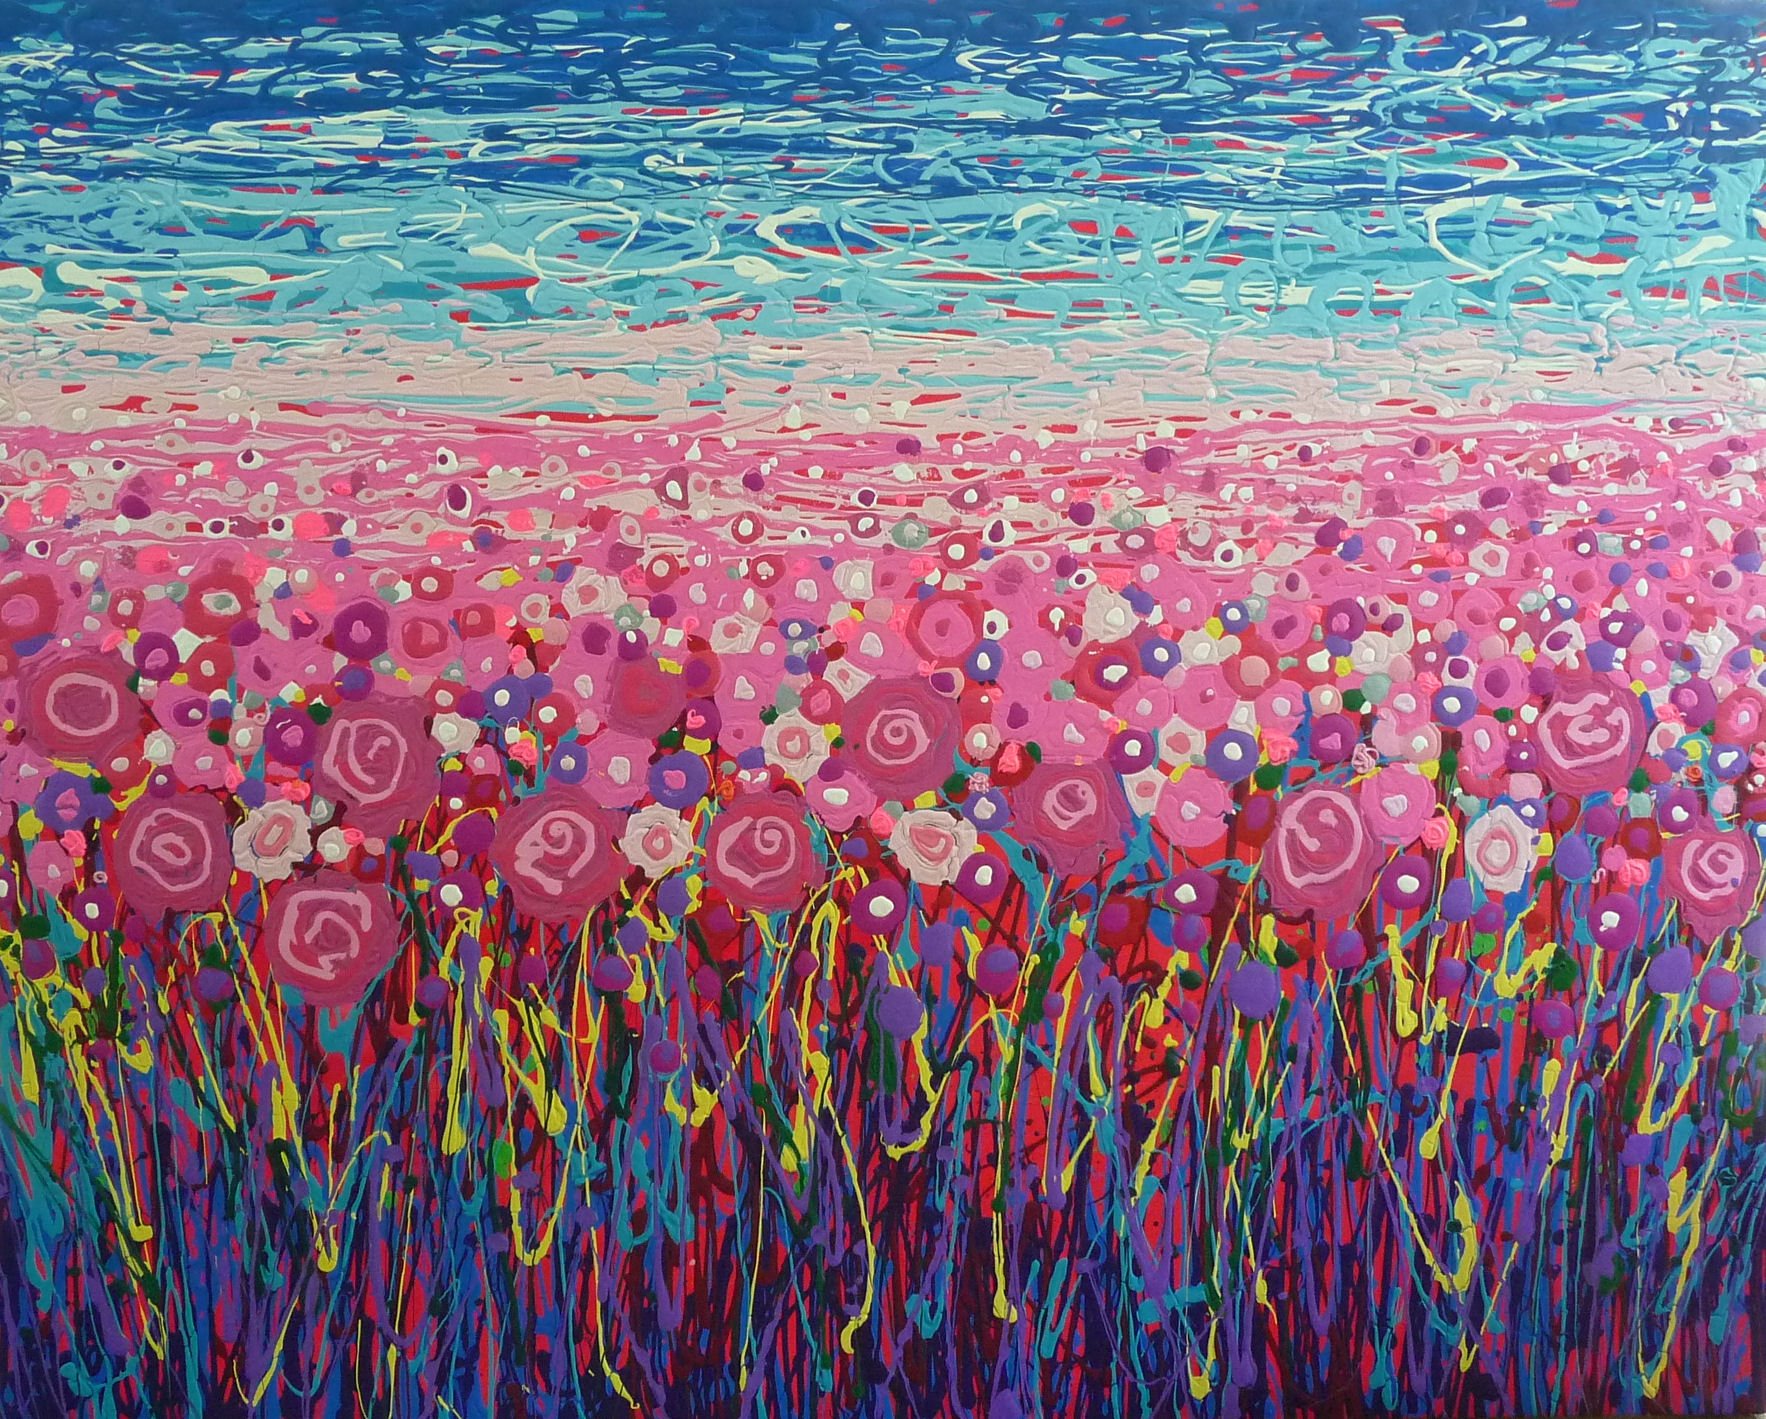  Flower Farm-acrylic on canvas 48” x 60” ~SOLD 